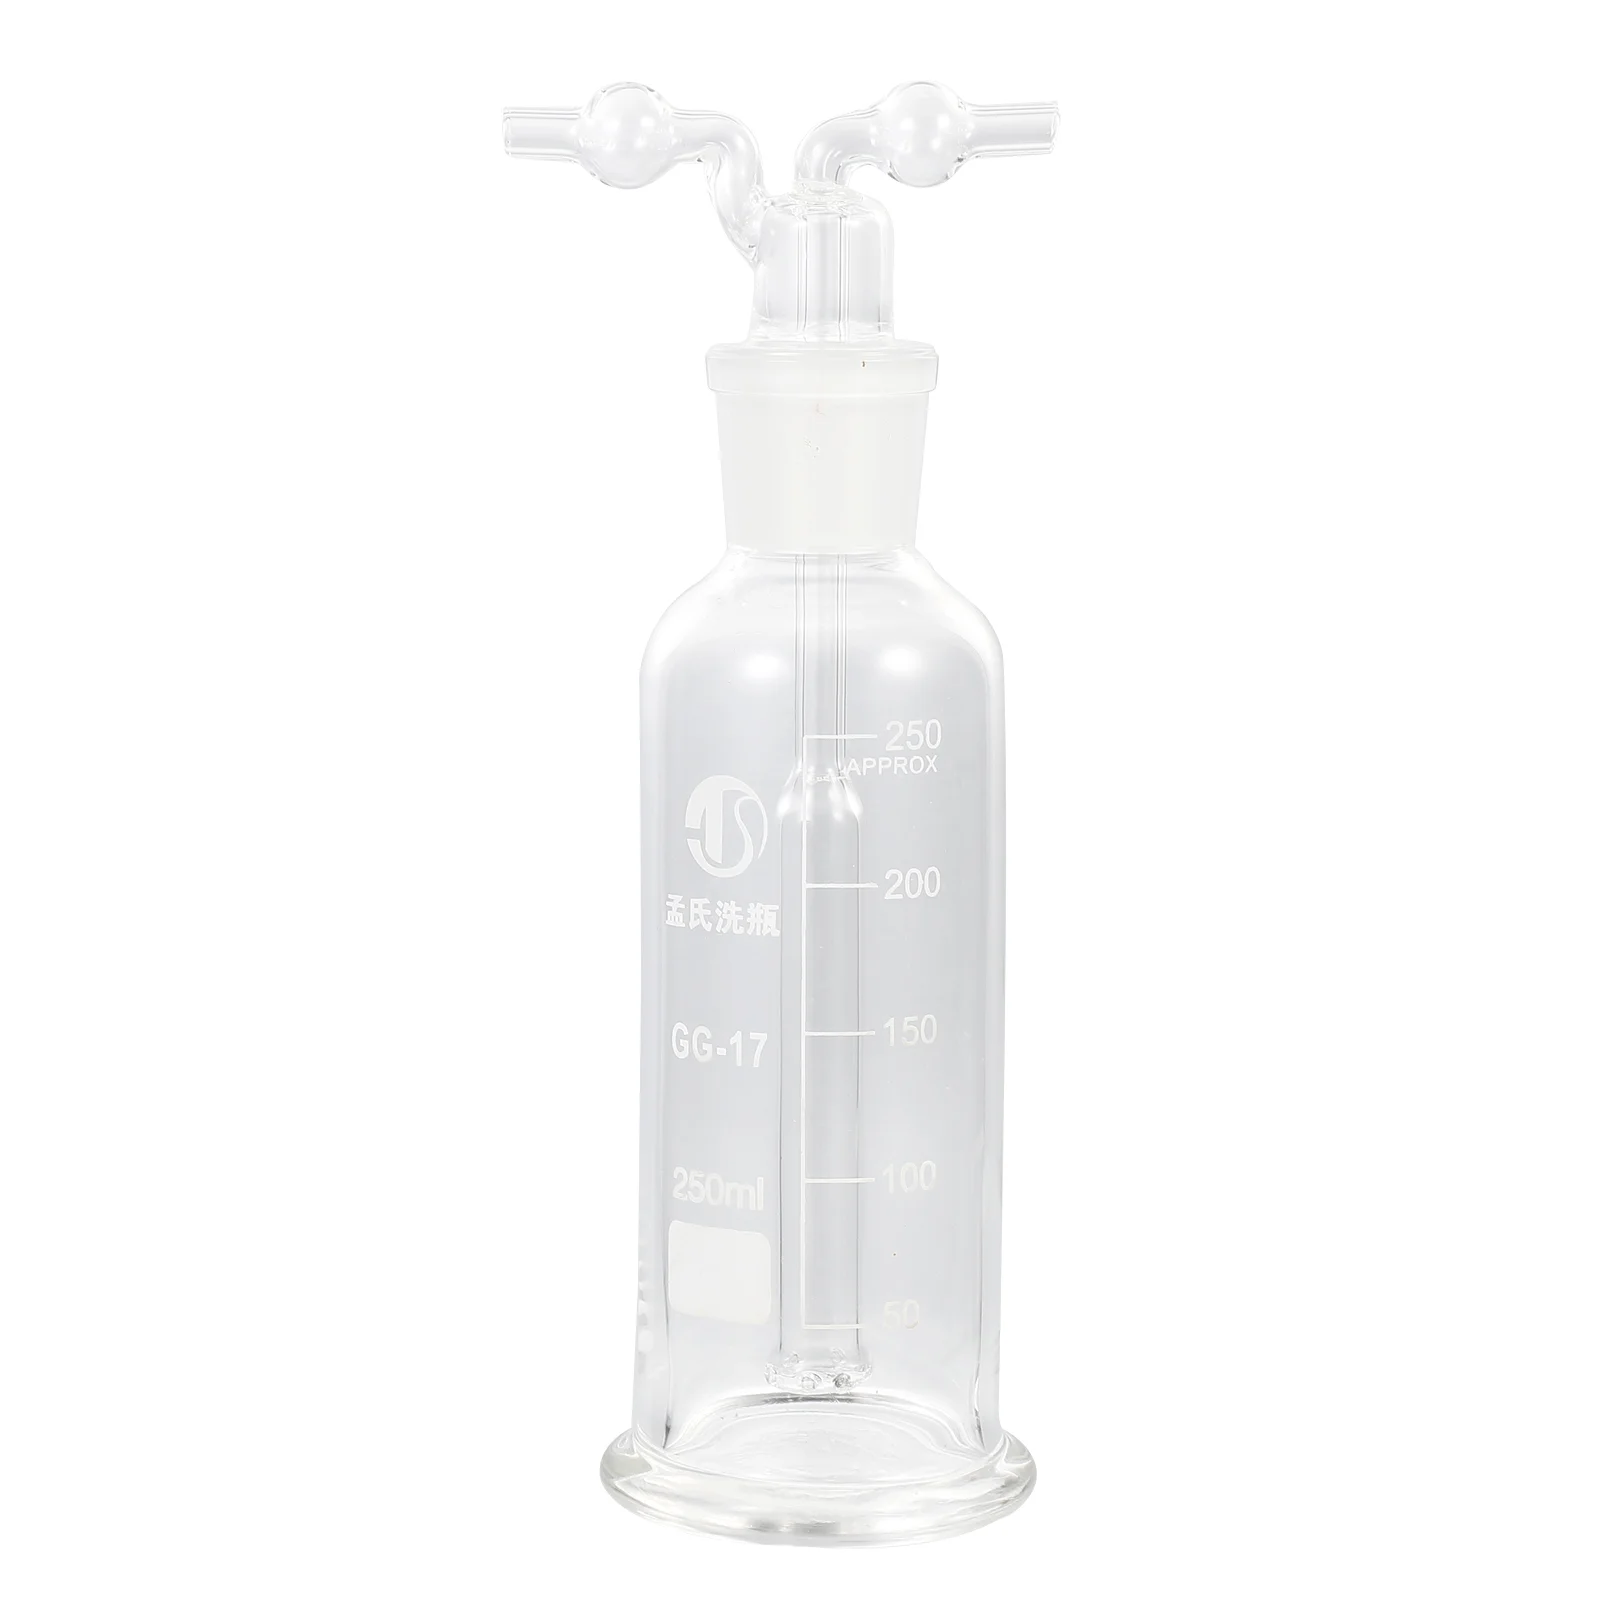 

Бутылка для мытья, принадлежности для экспериментов, стеклянные газовые бутылки для мытья, лабораторные аксессуары, лаборатории, научная пористая поставка аксессуаров